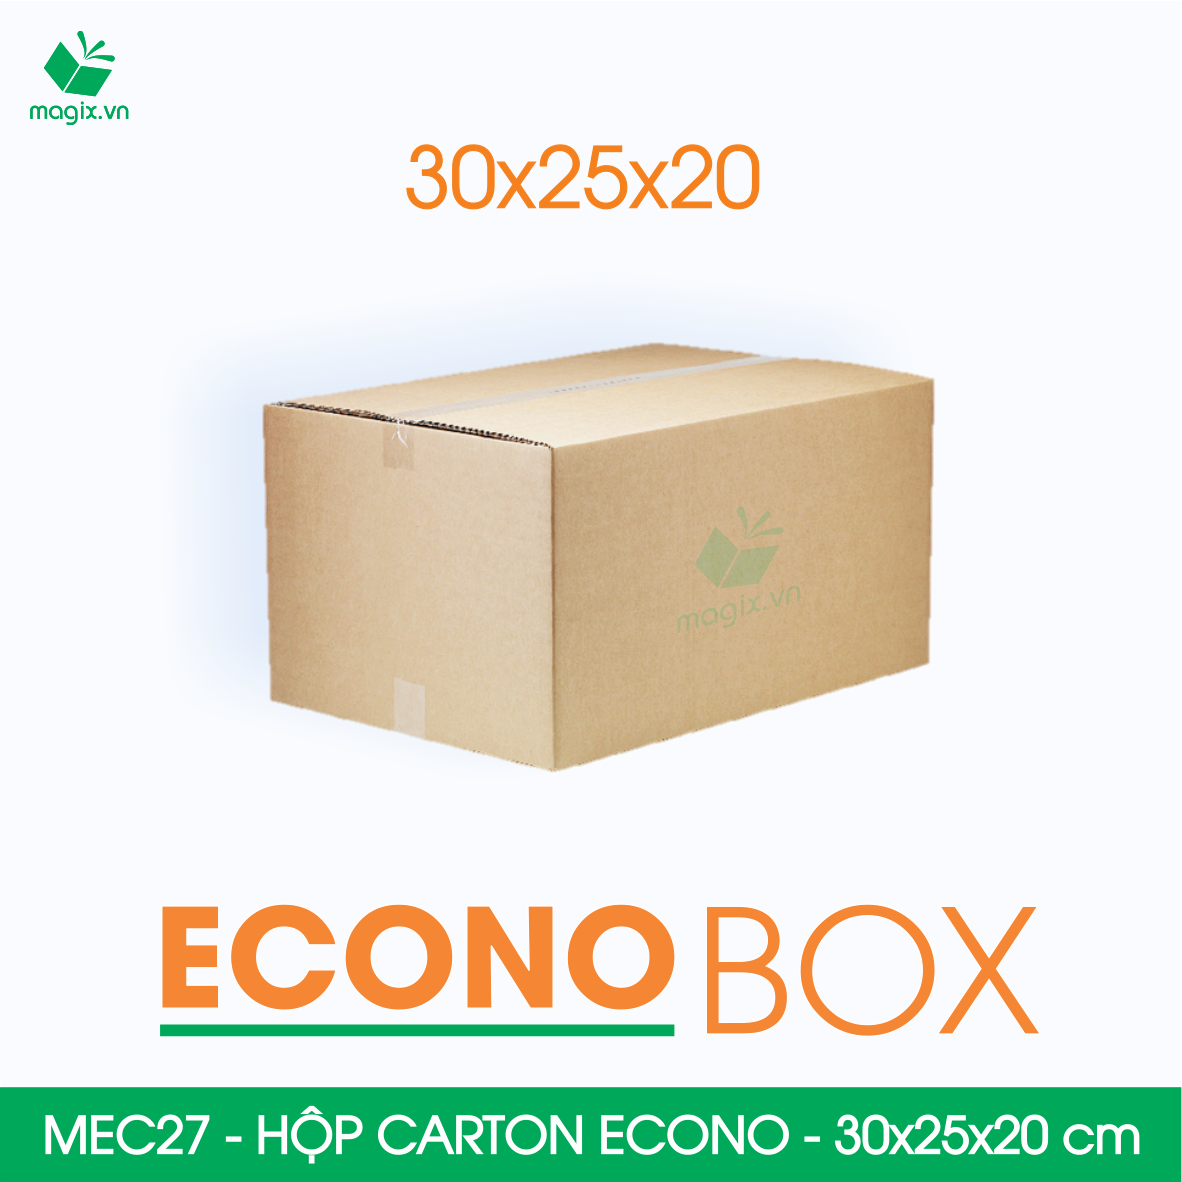 MEC27 - 30x25x20 cm - Combo 100 thùng hộp carton trơn siêu tiết kiệm ECONO